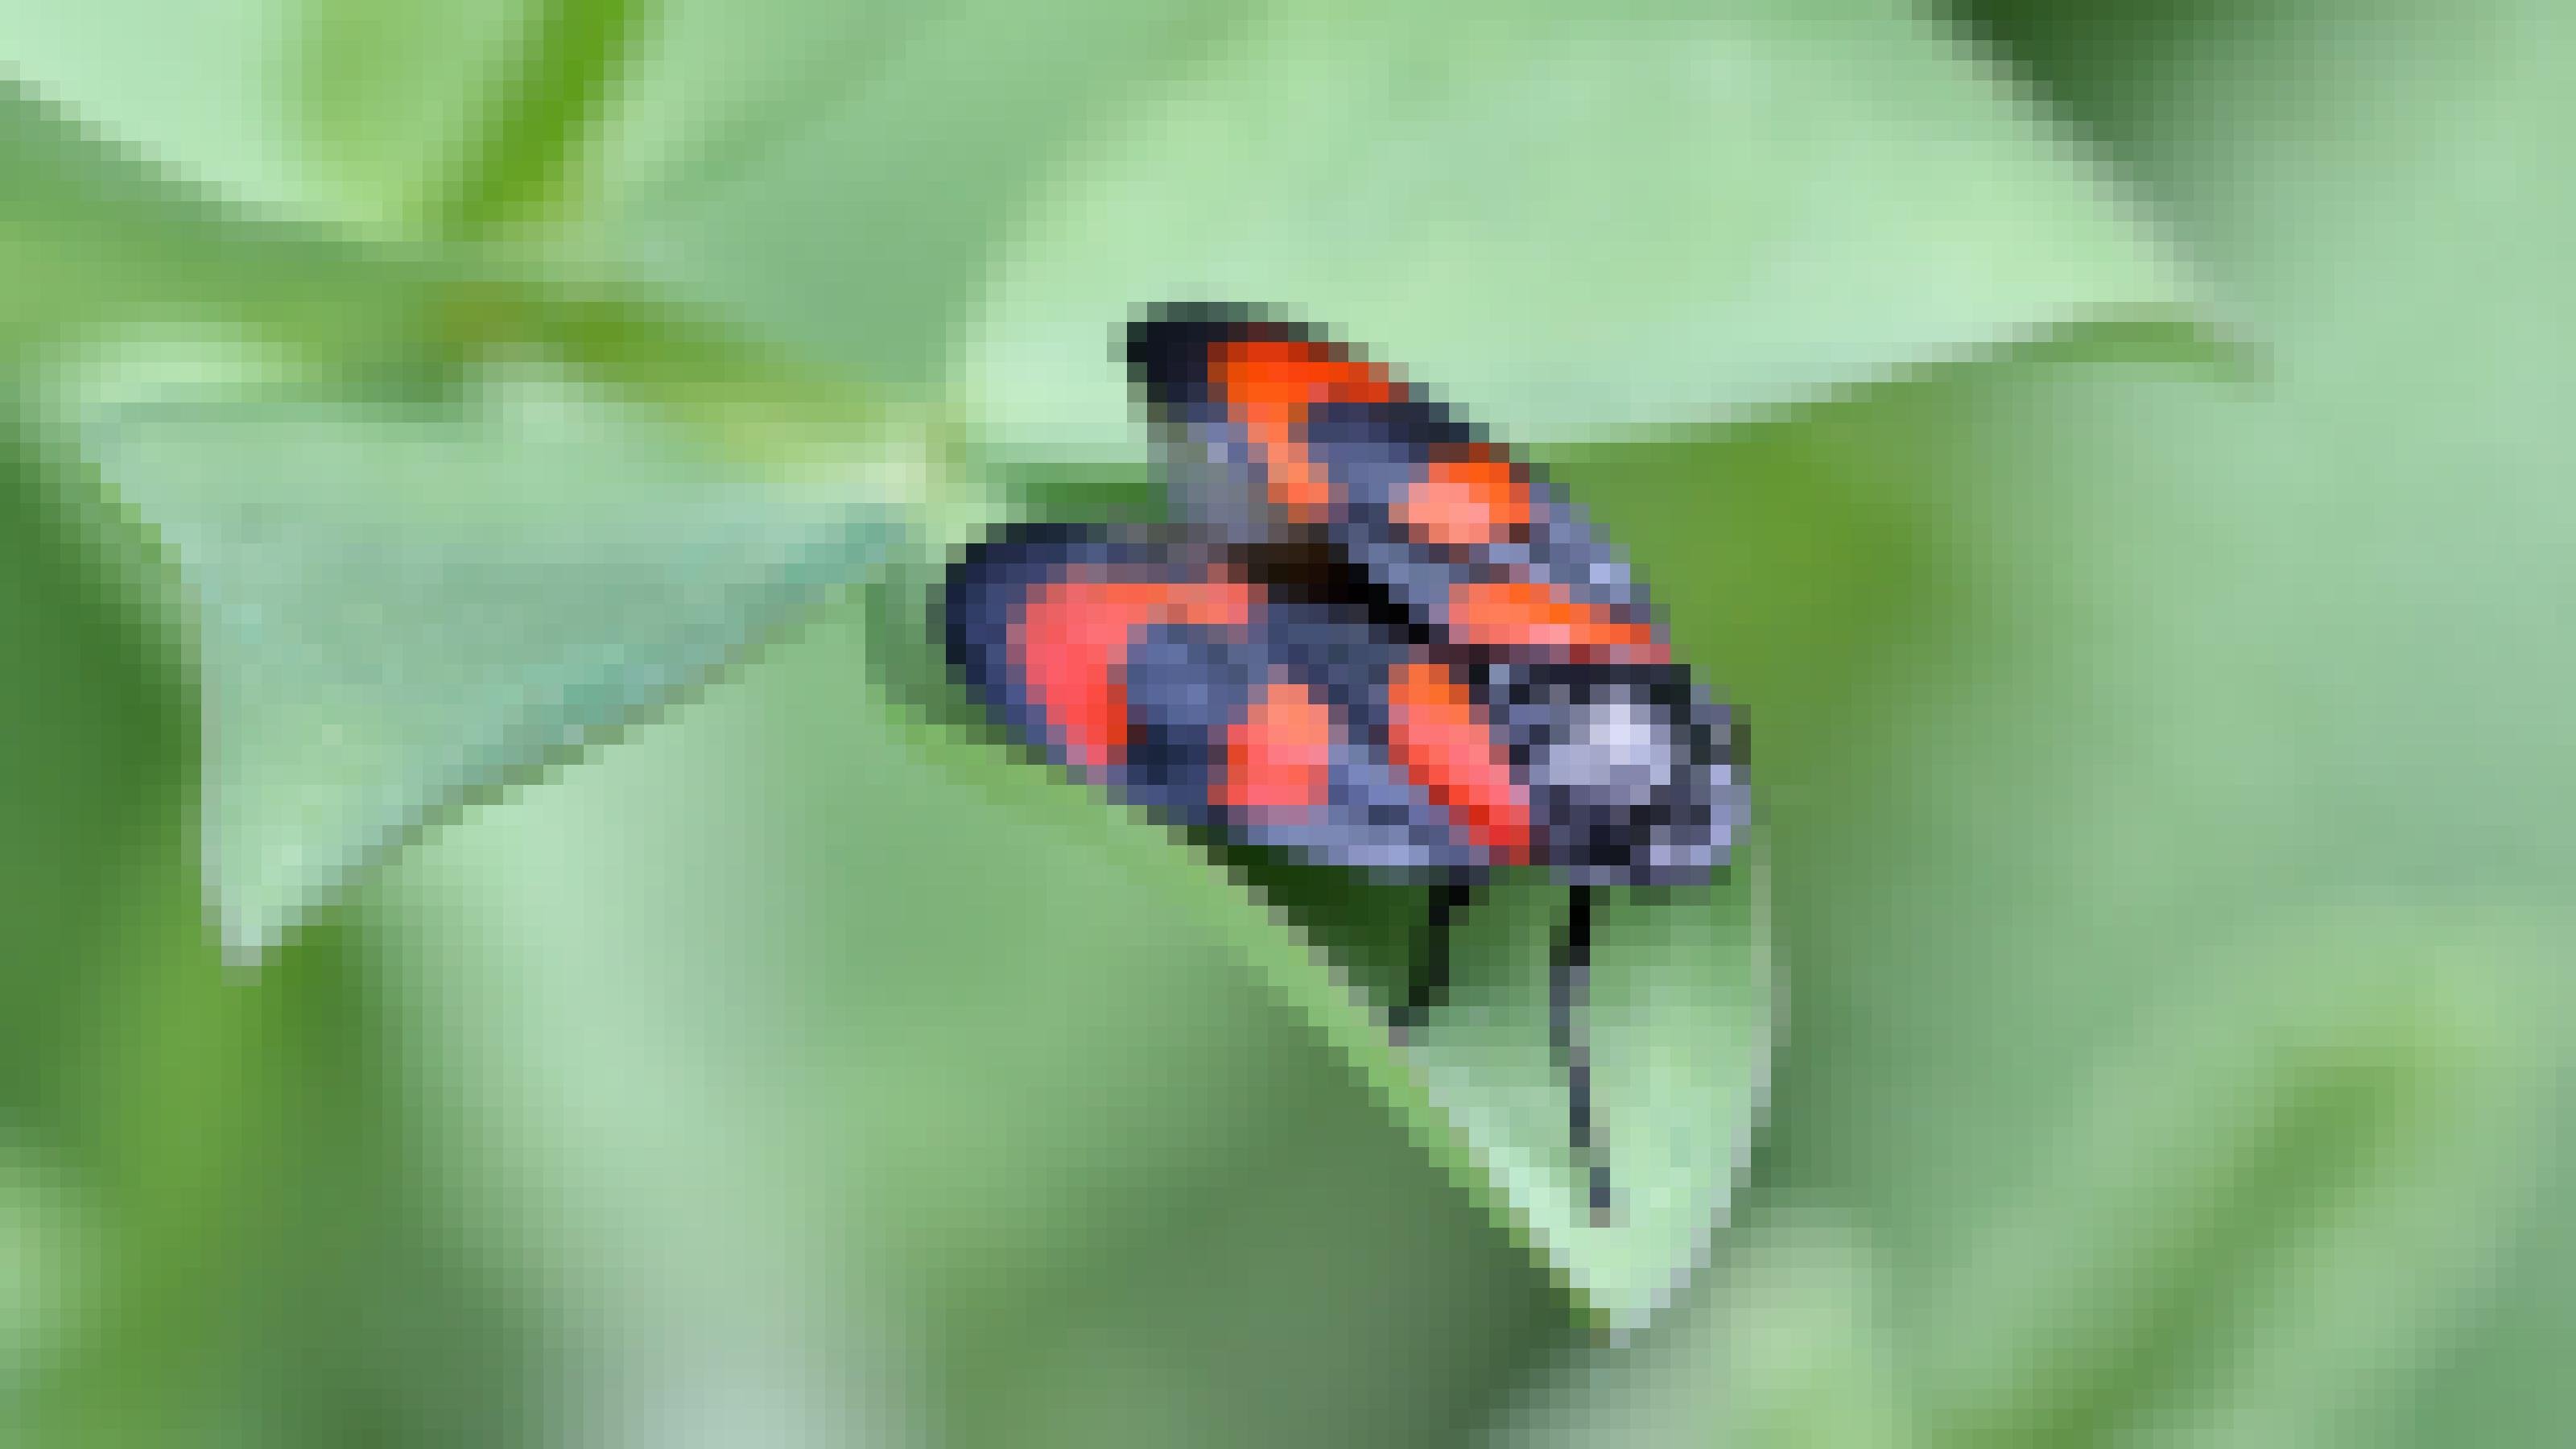 Rot-schwarz gezeichnetes Insekt mit schwarzem Kopf und schwarzen Beinen sitzt auf einem grünen Blatt.